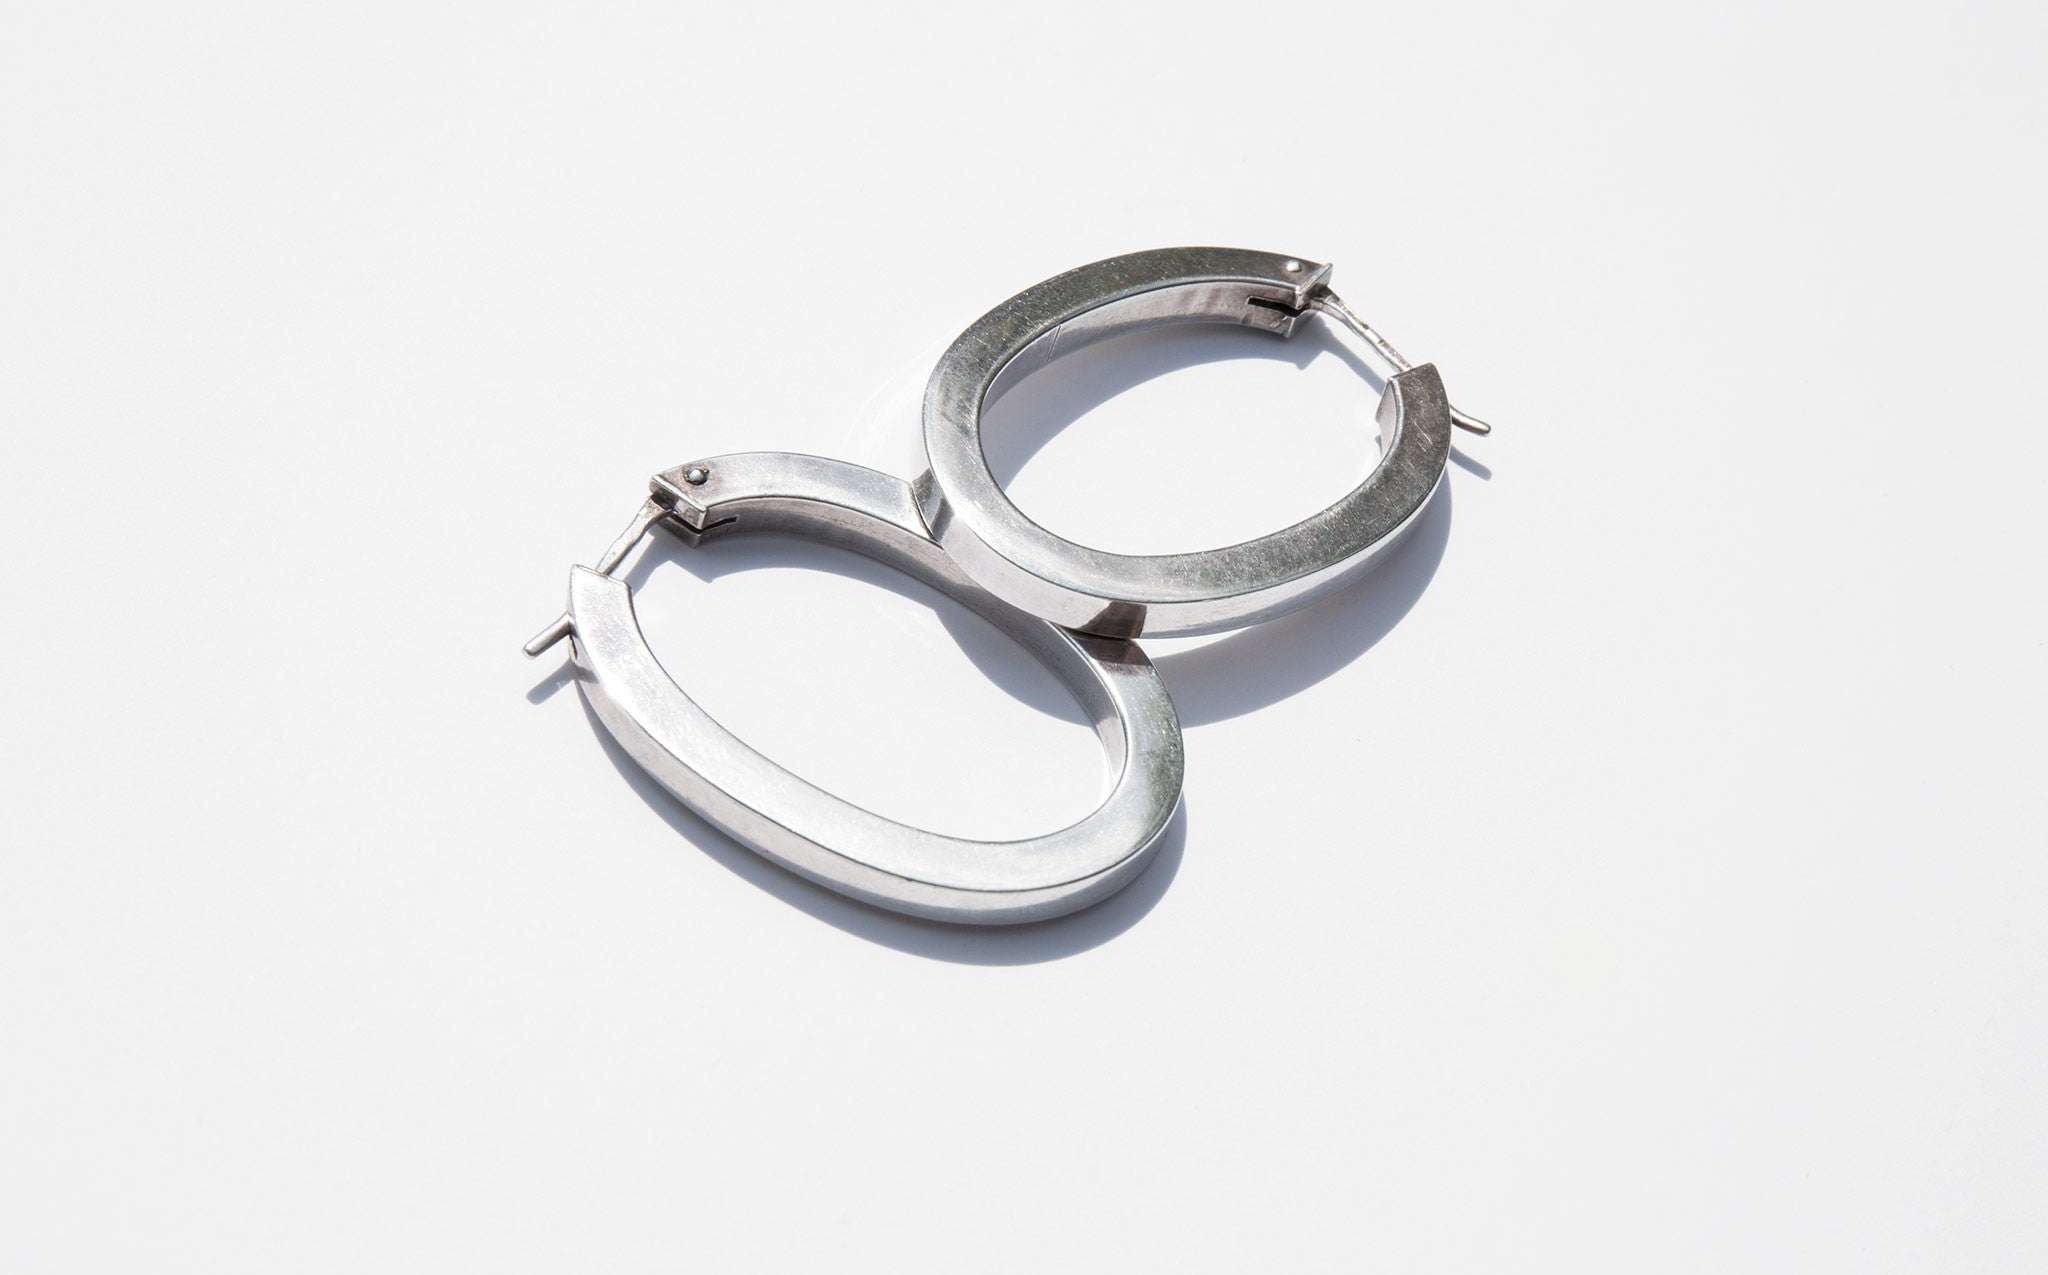 Sculptural Oval Hoop Earrings